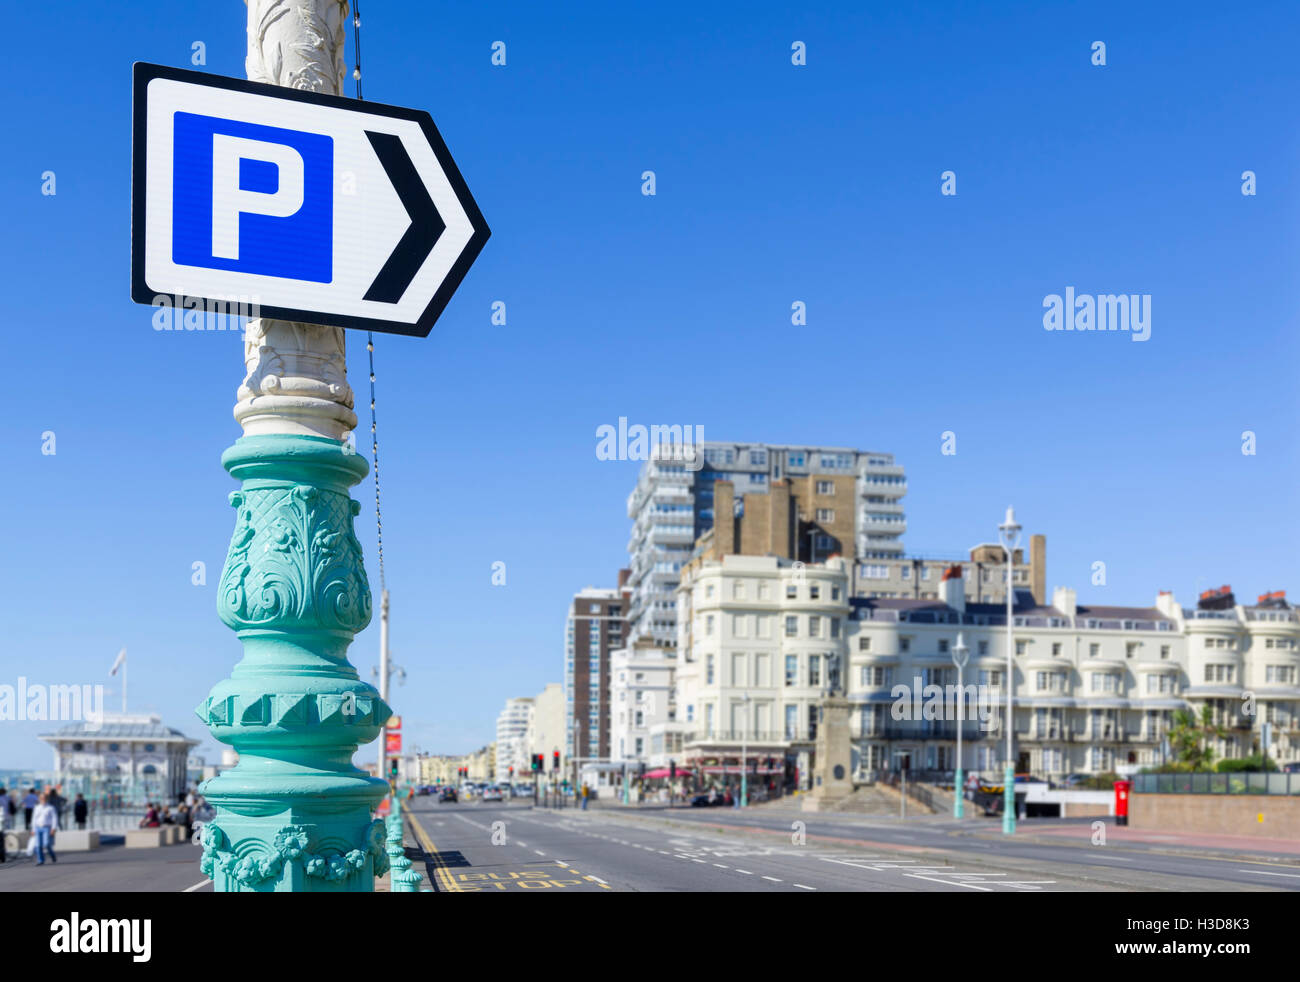 Fléchage Parking Un parking sur une route principale à Brighton, East Sussex, Angleterre, Royaume-Uni. Banque D'Images